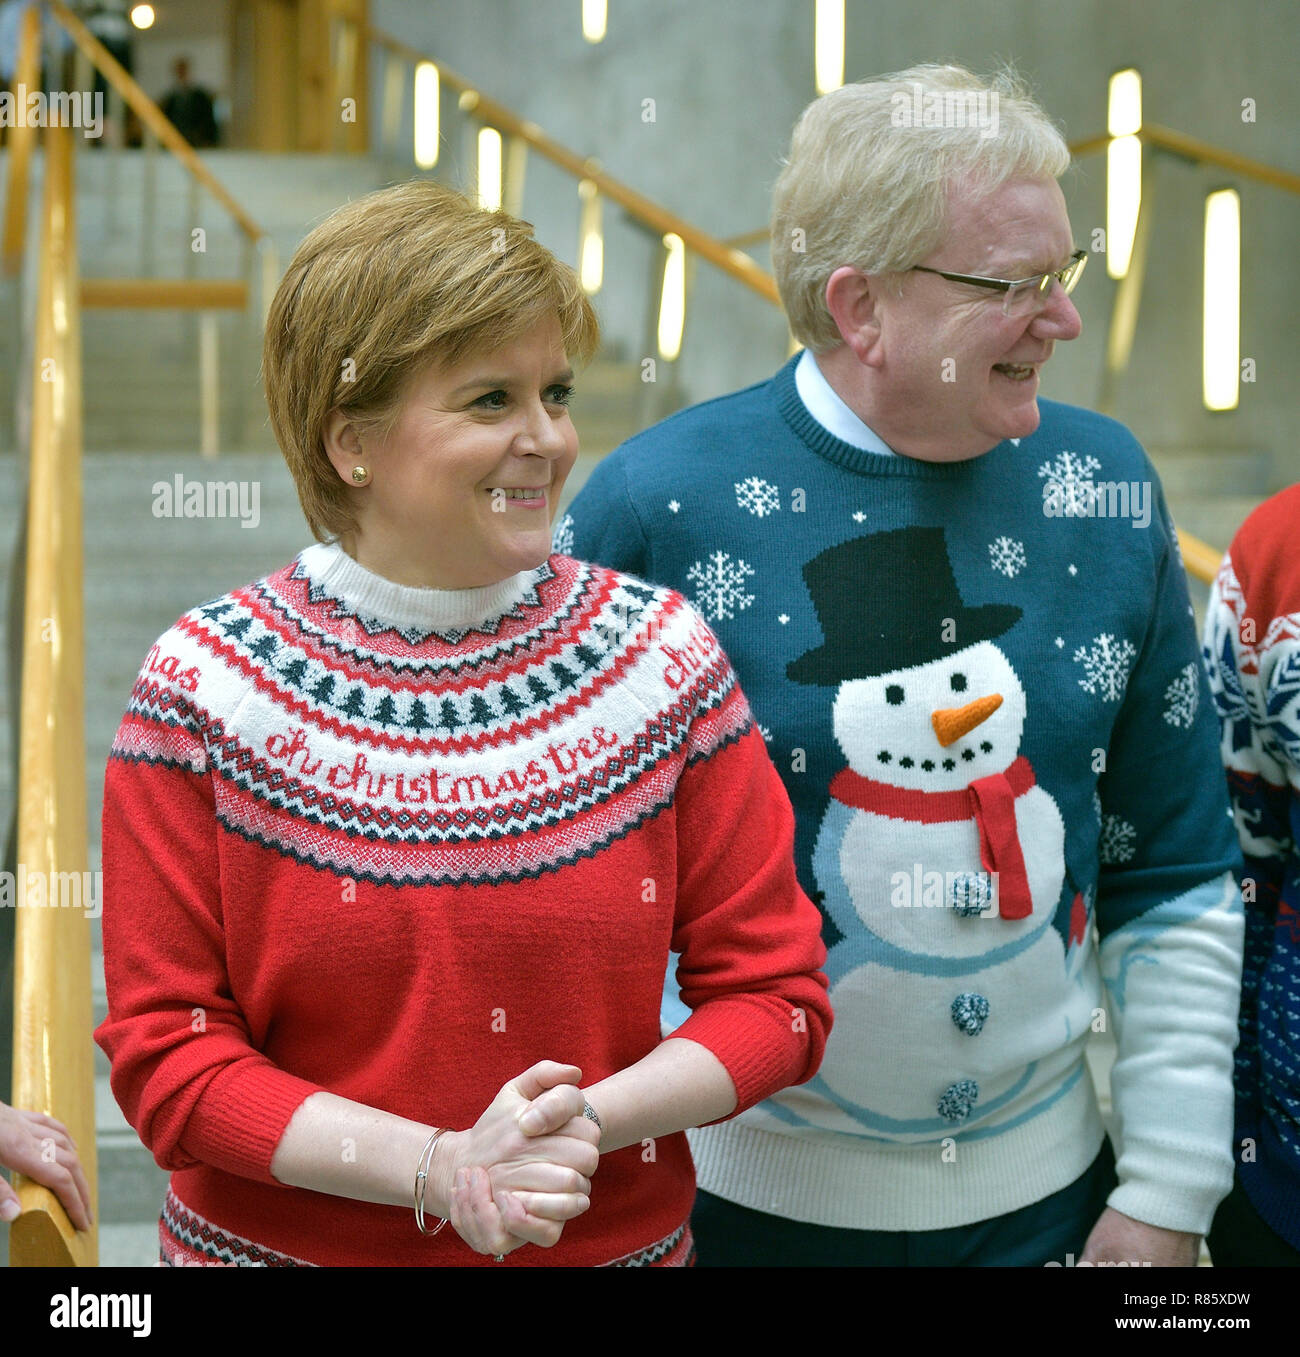 Speichern der Kinder Weihnachten Jumper Tag 2018. Bild L-R an das Schottische Parlament mit ihrem Weihnachten Jumper sind erster Minister Nicola Sturgeon (SNP) und Jackson Carlaw Schottischen Konservativen stellvertretende Vorsitzende. Stockfoto